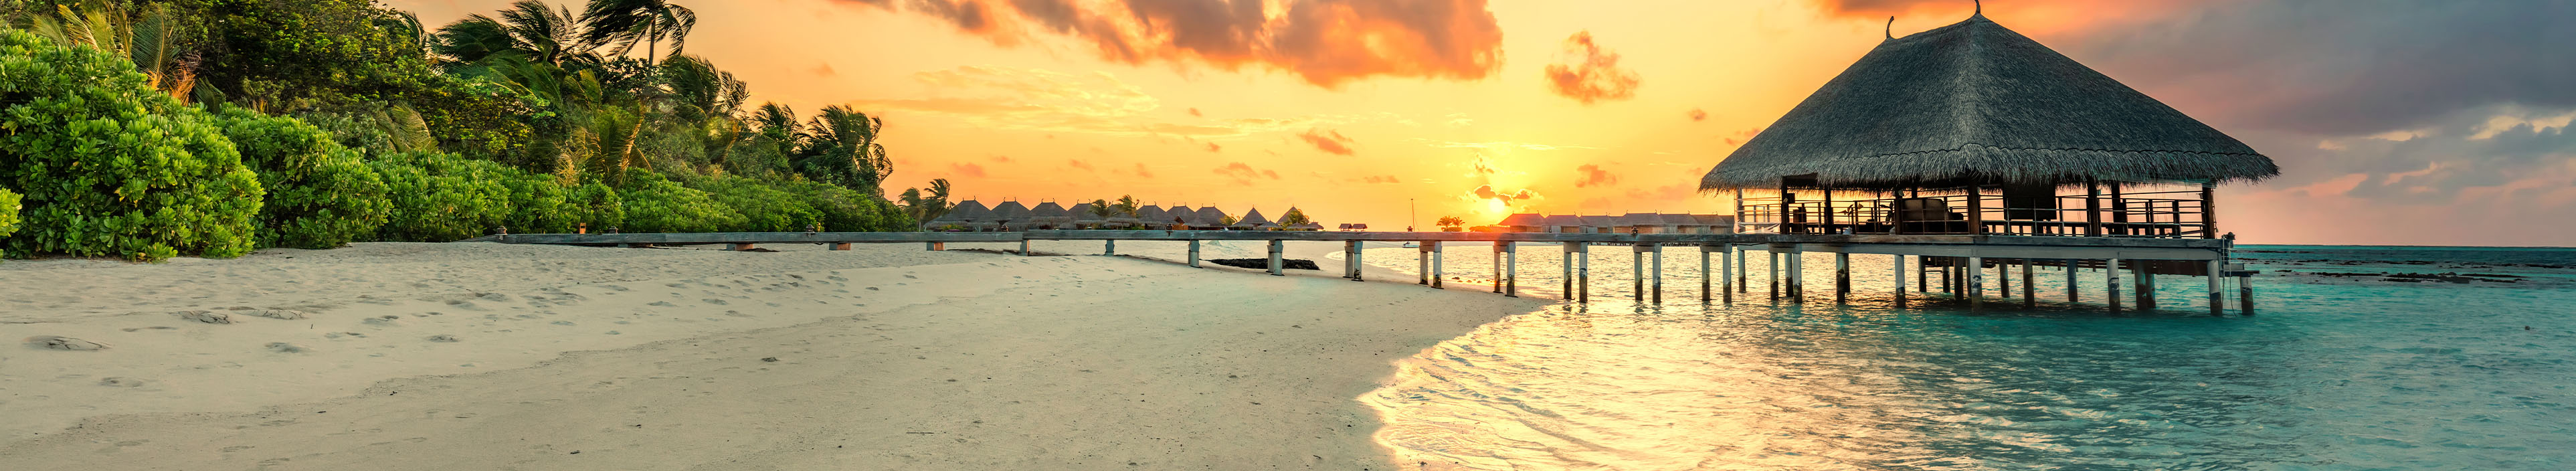 Strand mit Steg auf den Malediven bei Sonnenuntergang